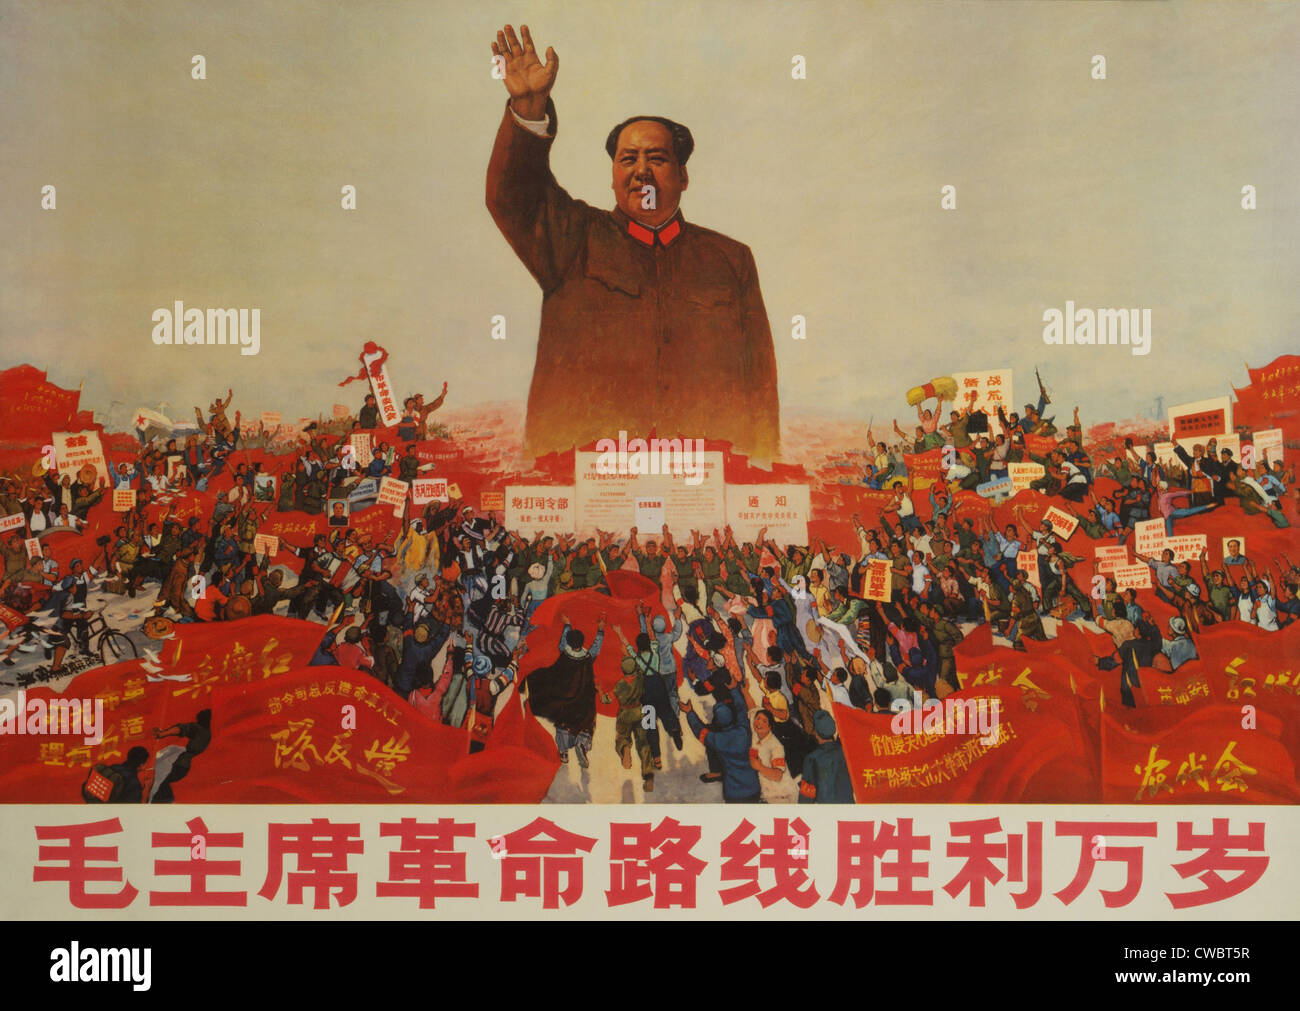 Vive la victoire de la ligne révolutionnaire du président Mao. Poster montre Mao Zedong greeting rassemblement de masse de gens holding signs Banque D'Images